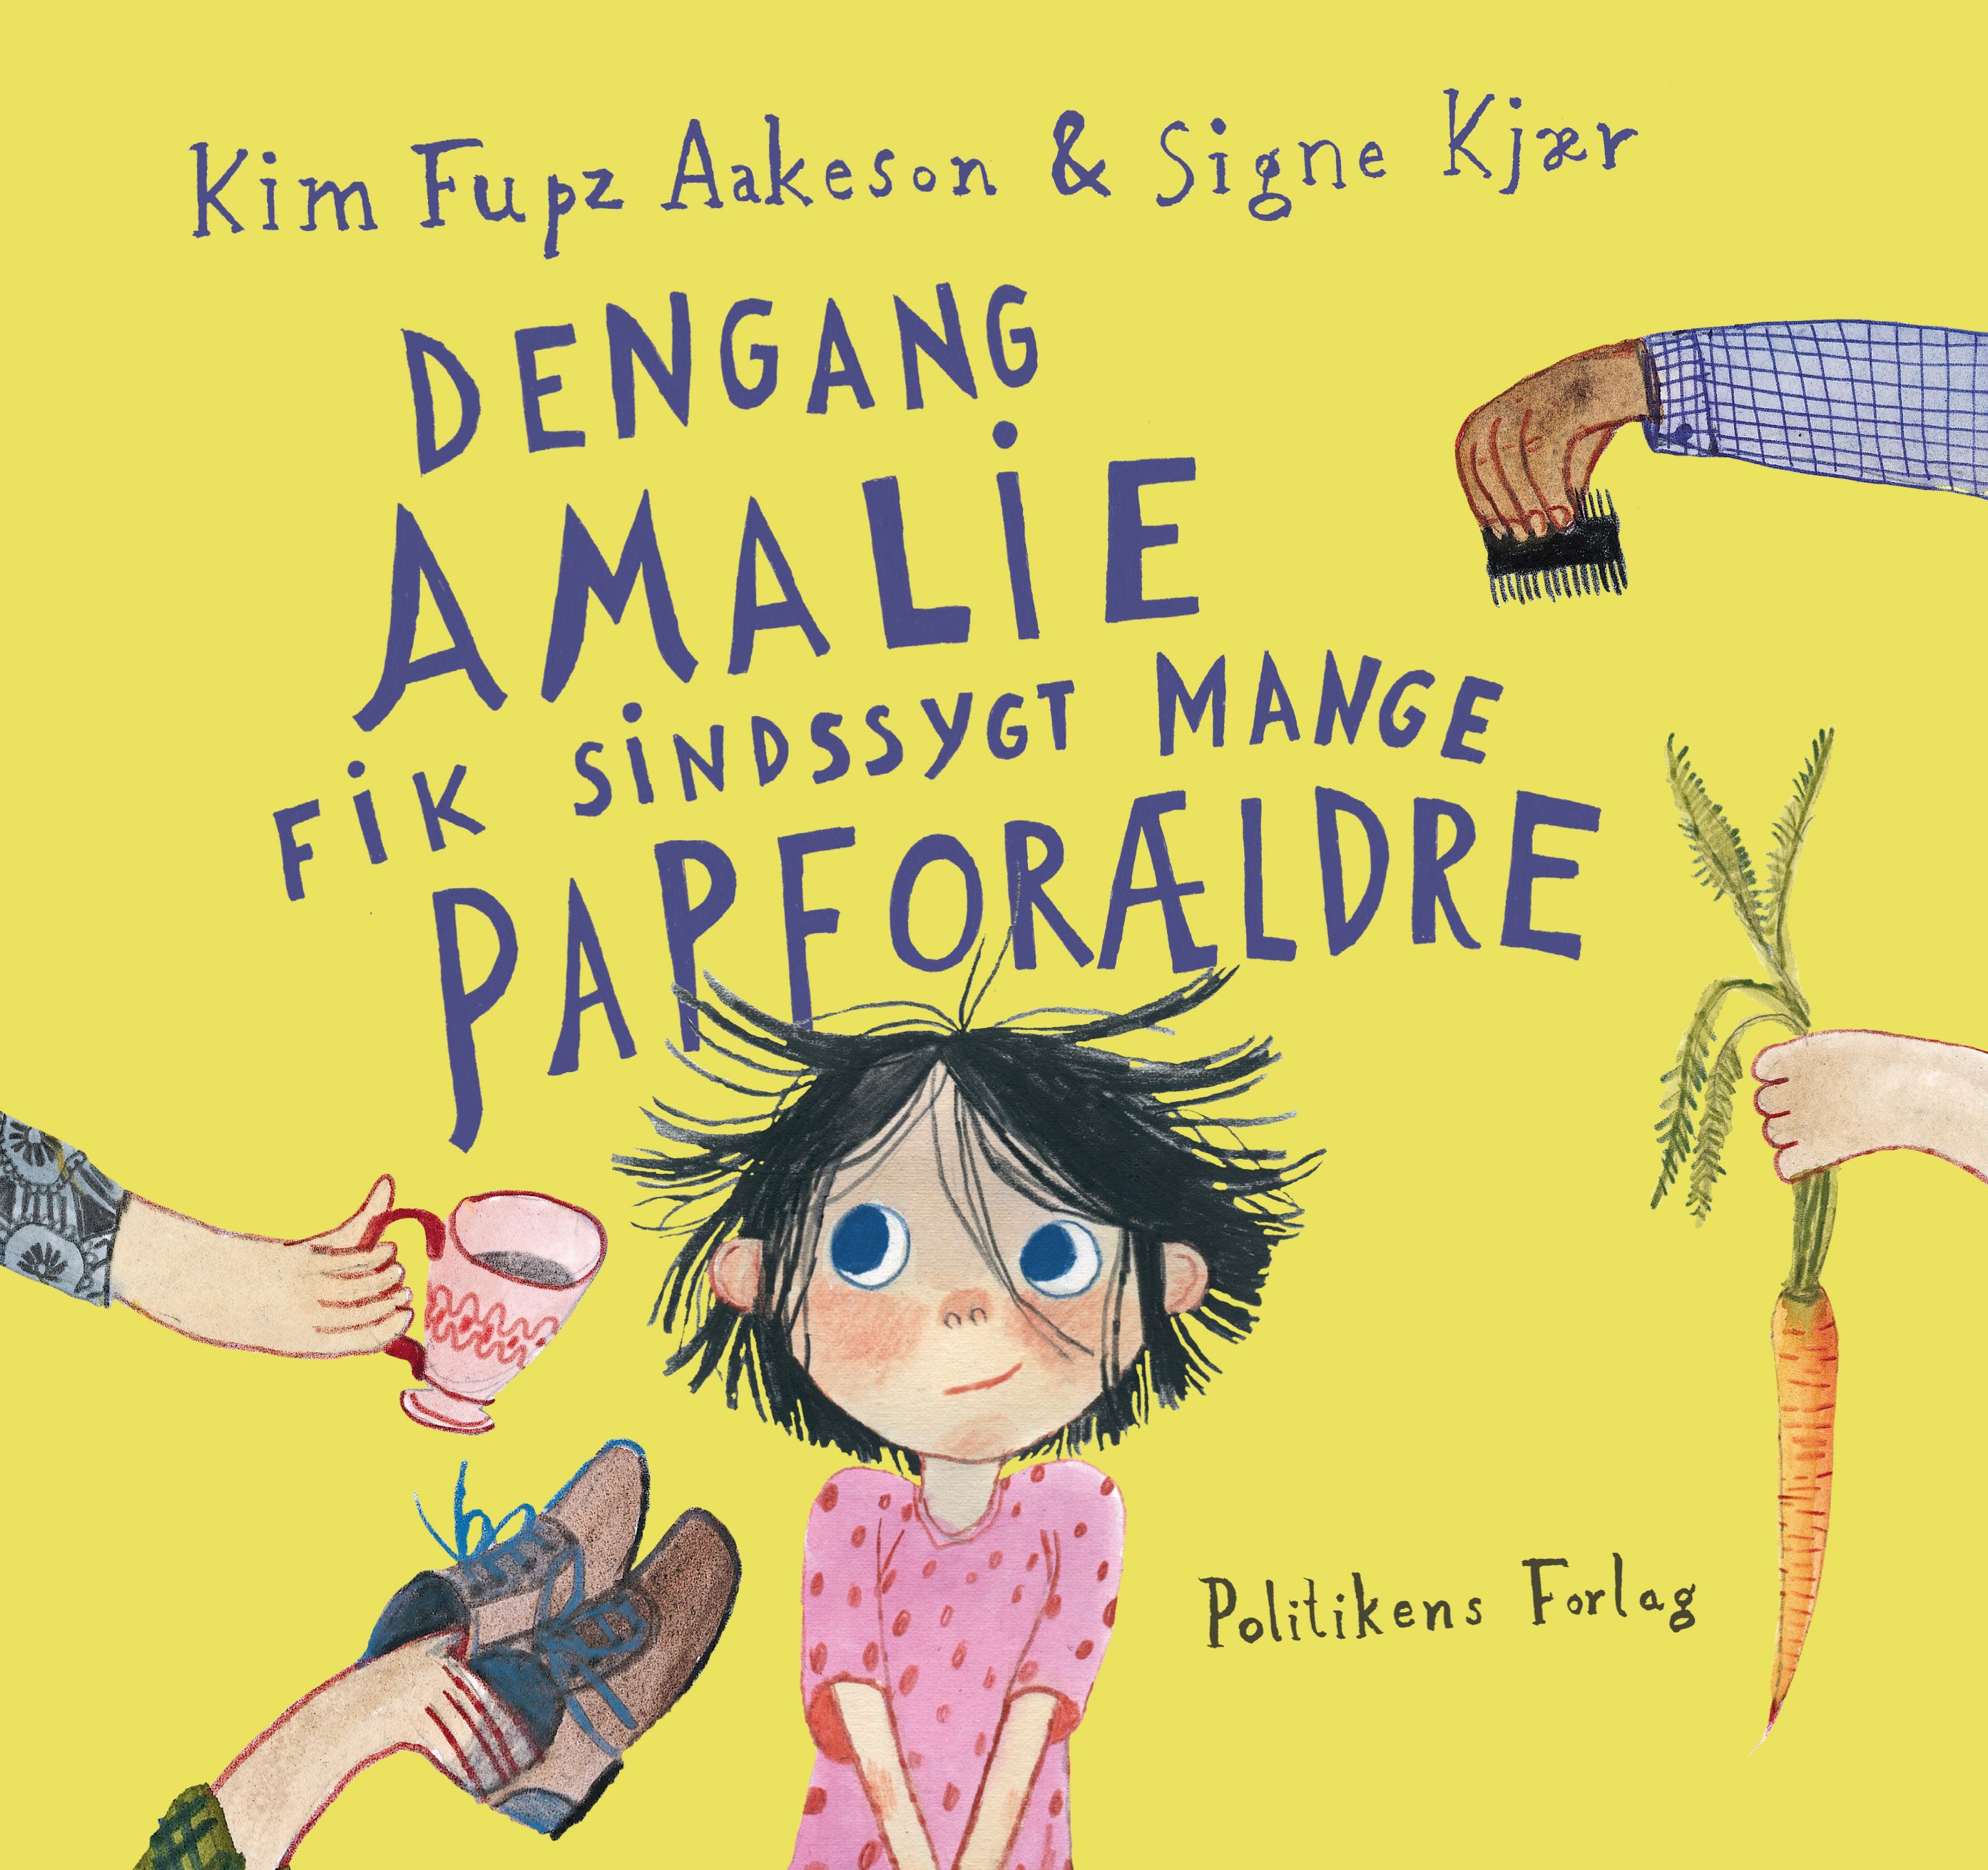 Dengang Amalie fik sindssygt mange papforældre, eBook by Kim Fupz Aakeson